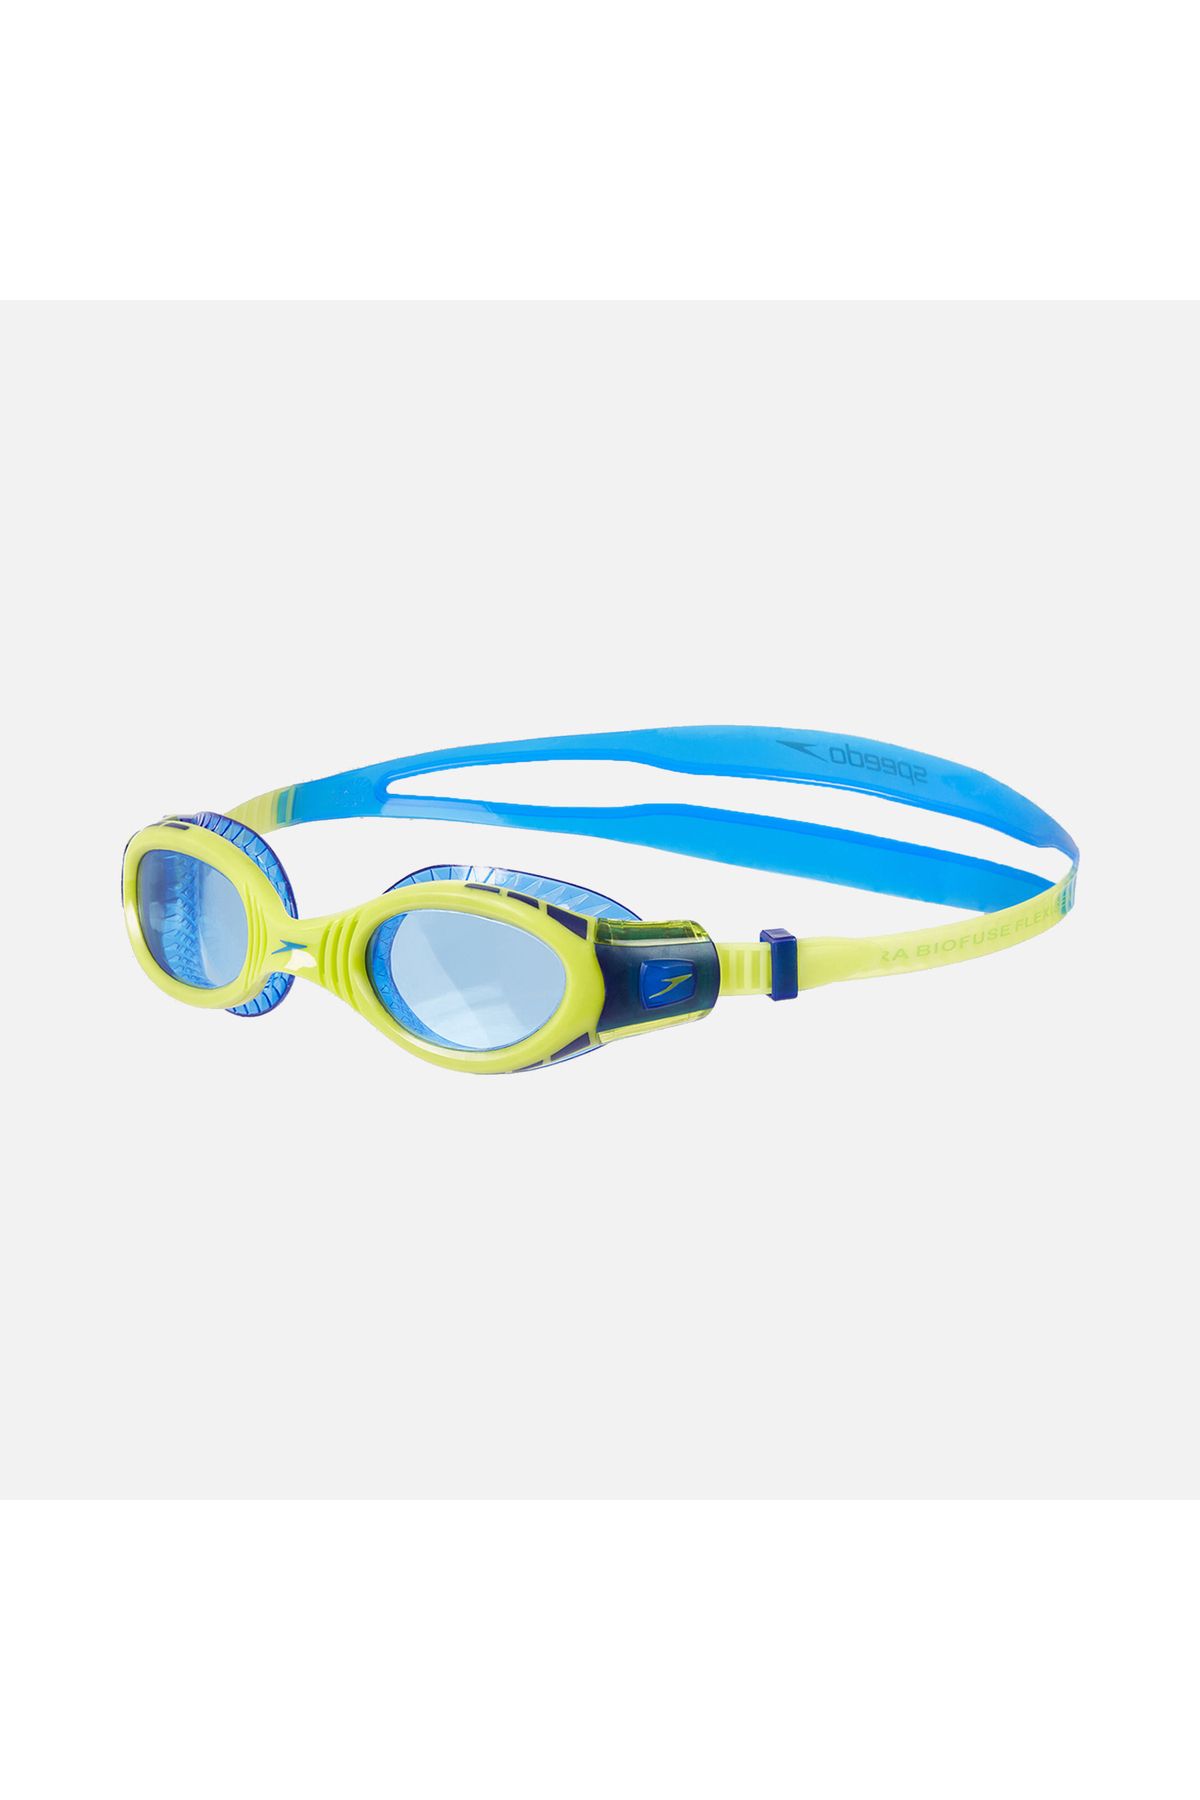 SPEEDO Futura Biofuse Flexiseal Junior Goggle Çocuk Yüzücü Gözlüğü